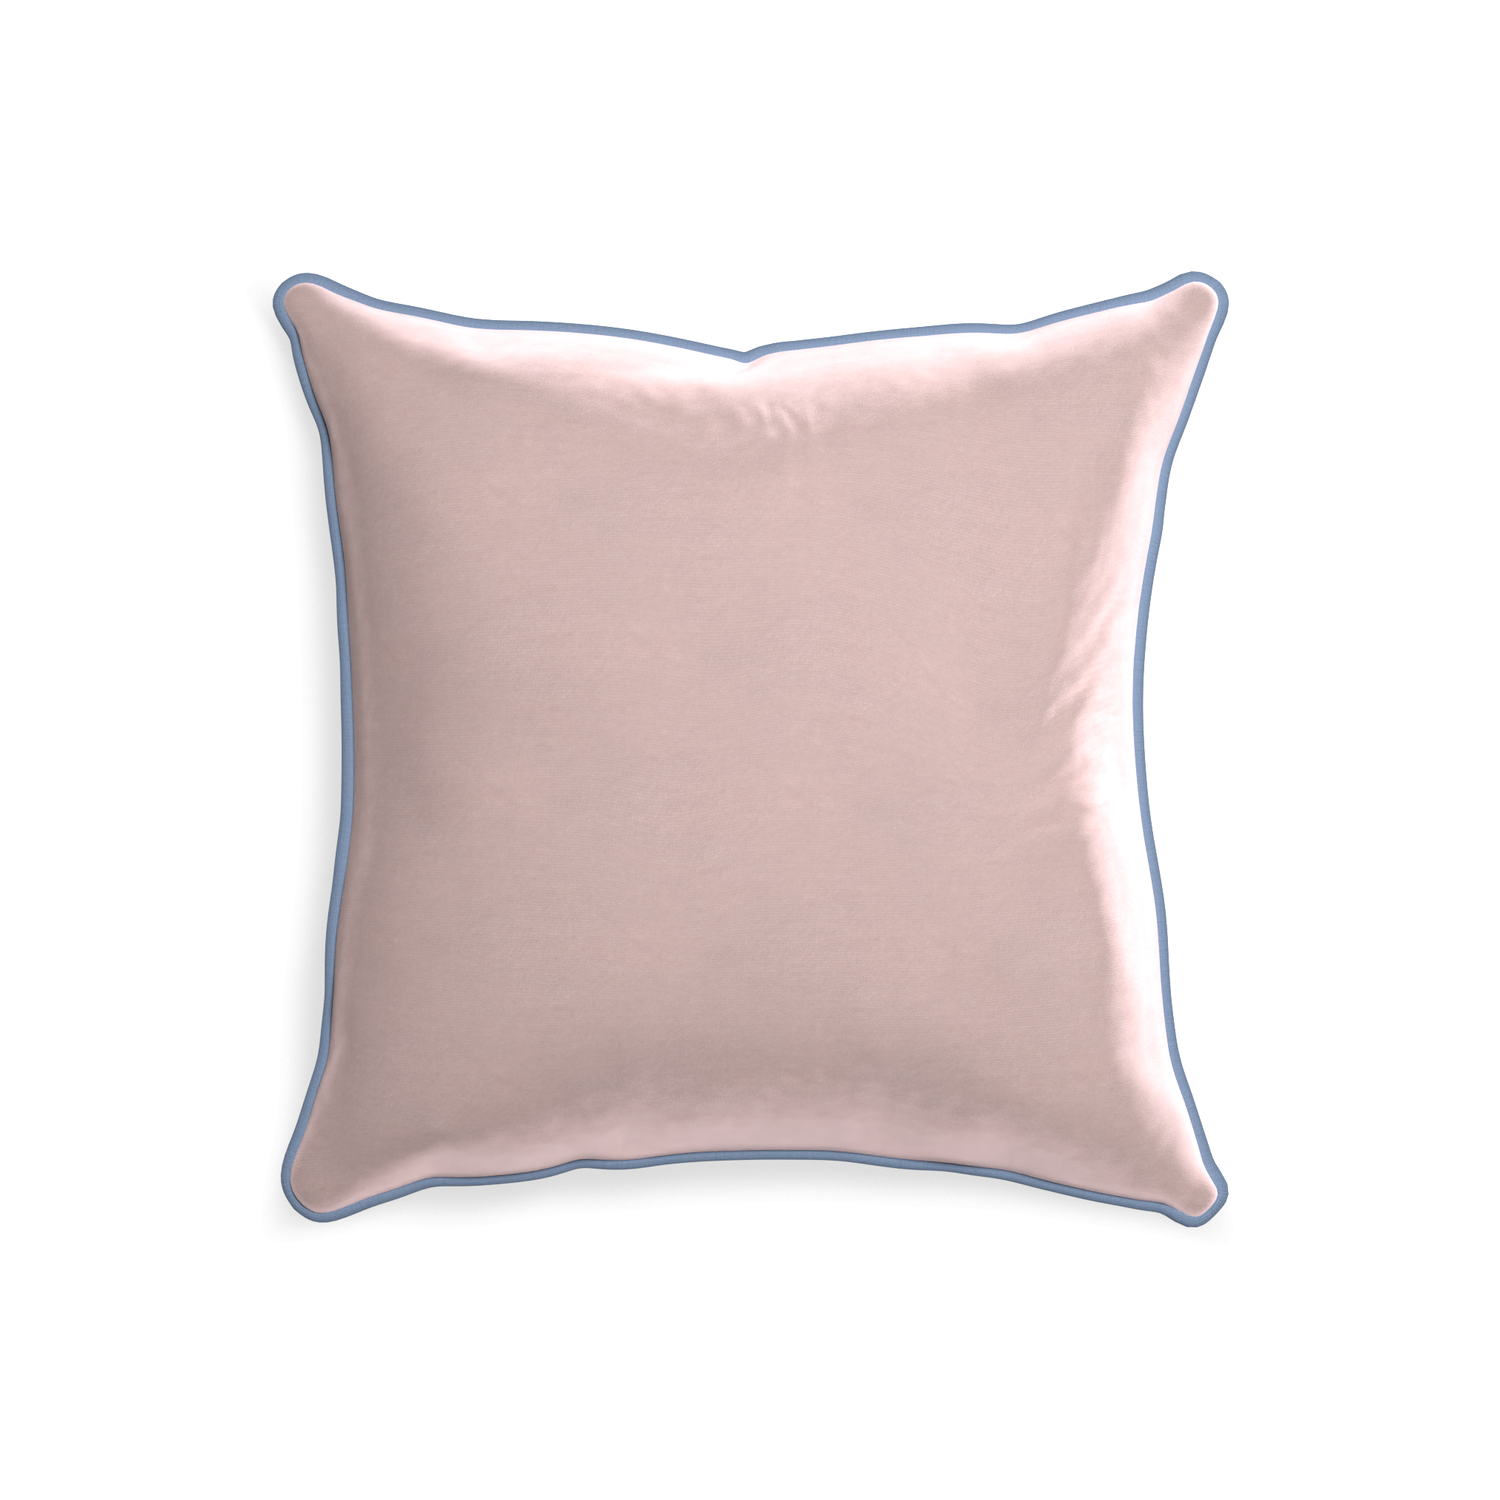 Contemporary Dirty Pink Handmade Velvet Throw Pillow & Down Insert